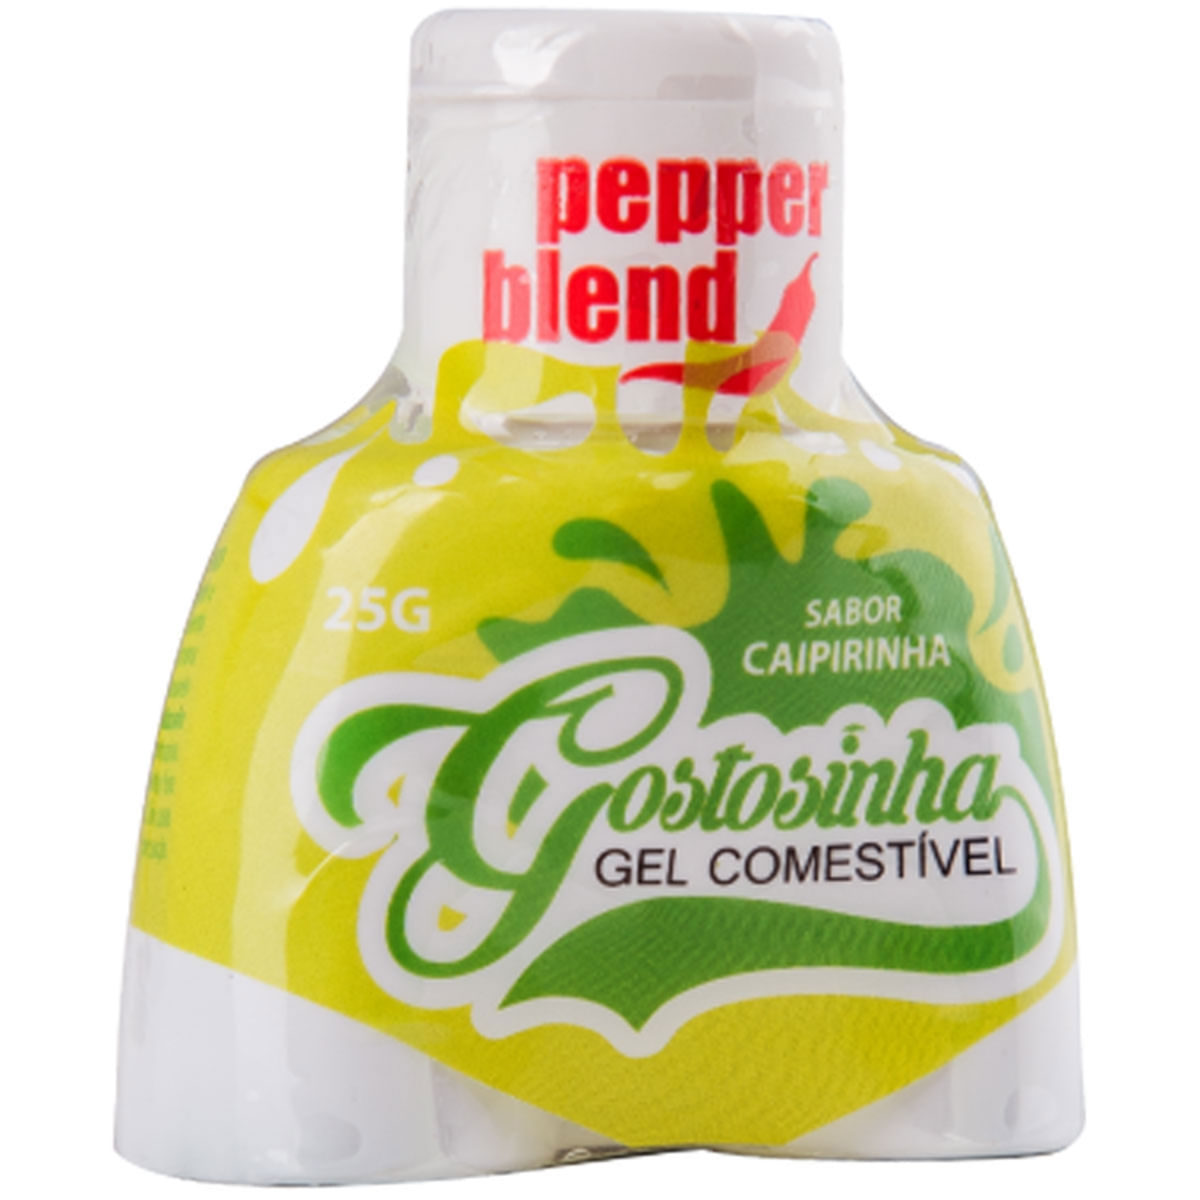 Gostosinha Gel Comestível Caipirinha 25gr Pepper Blend